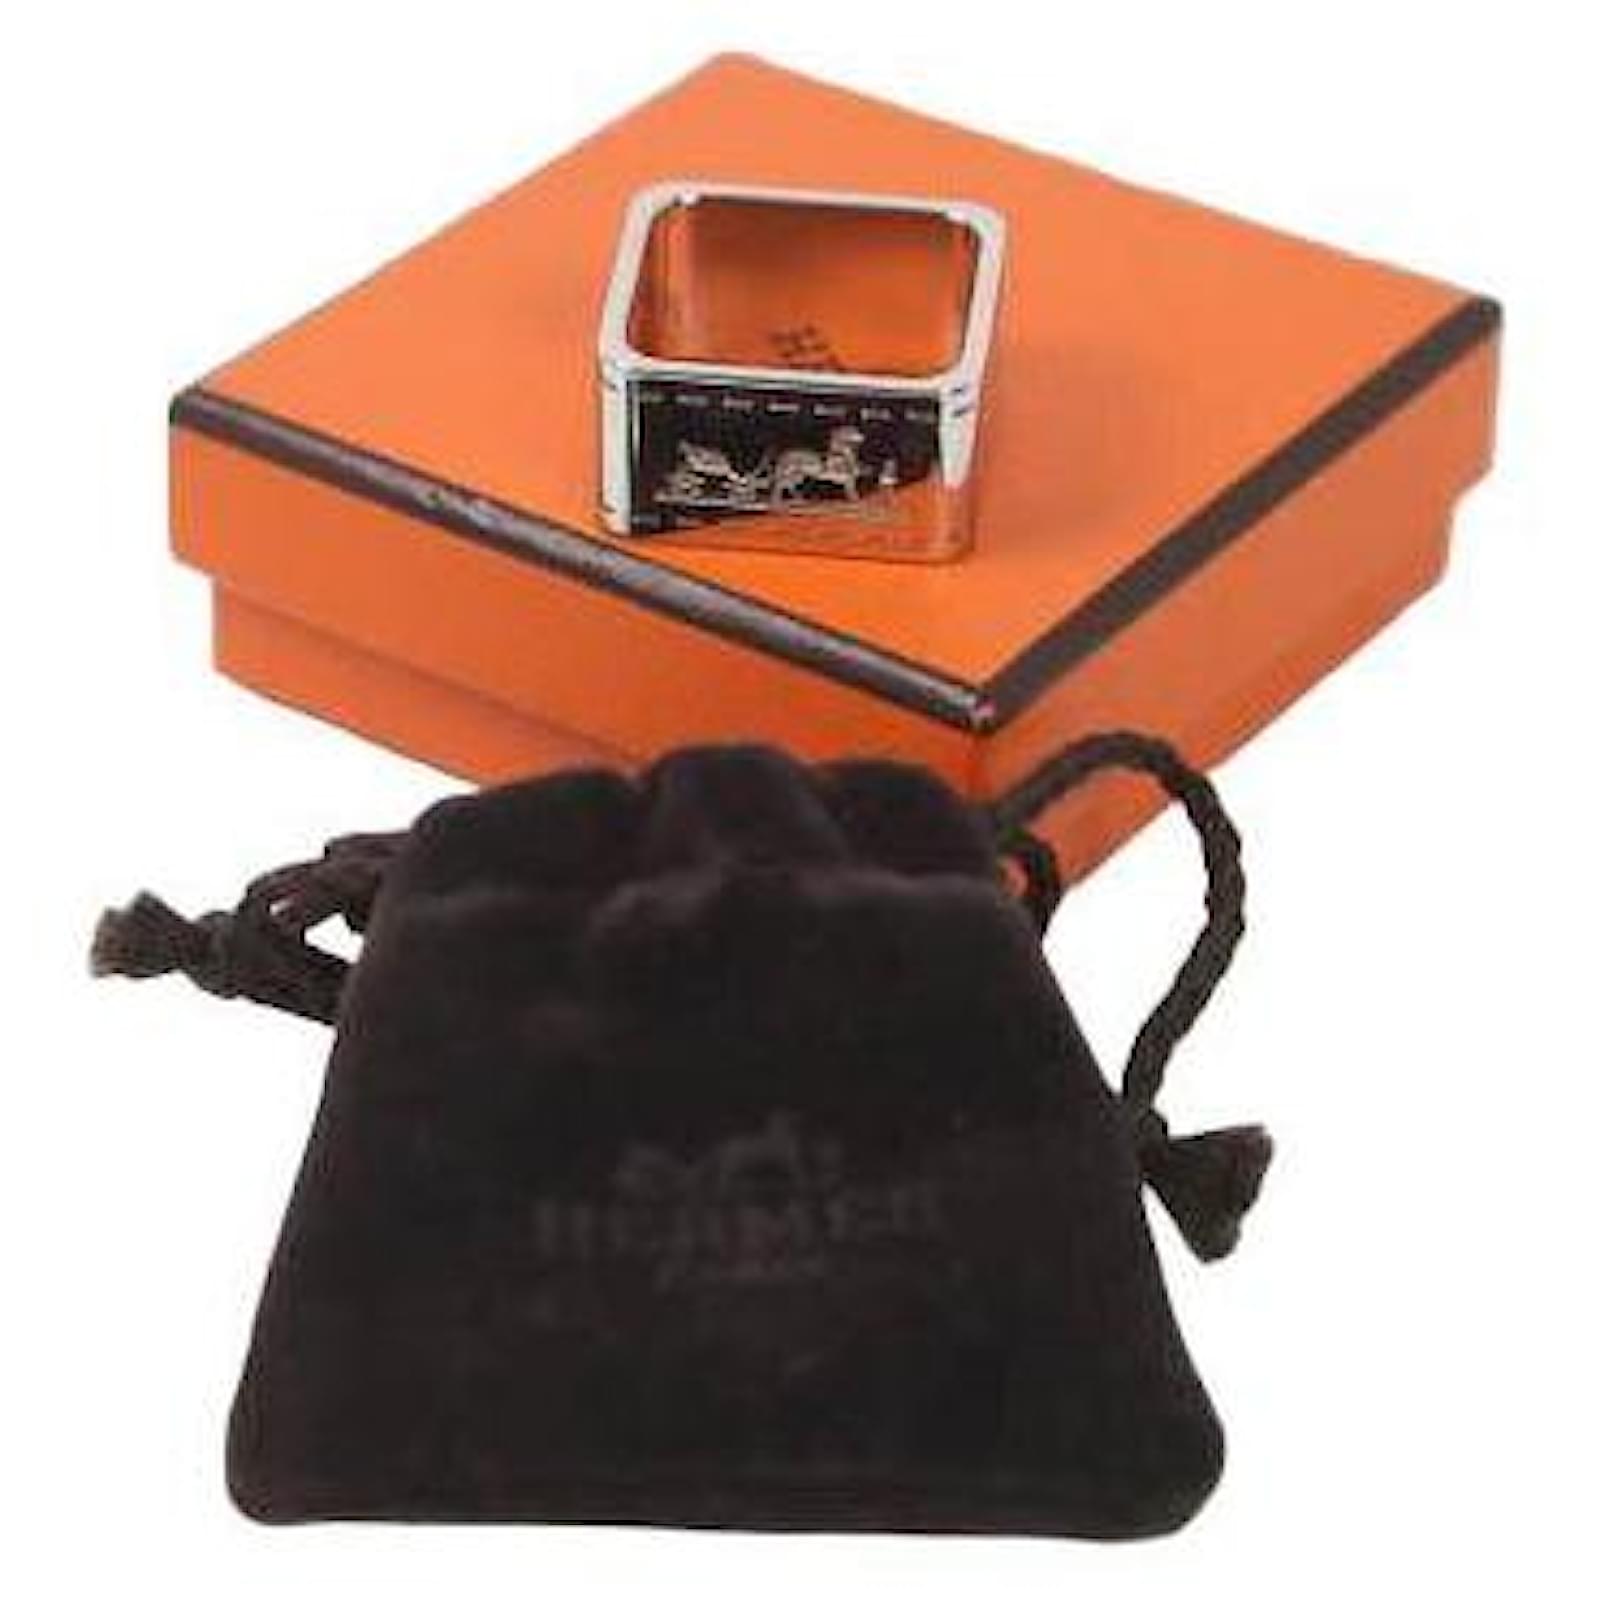 Pin on Hermes Handbags